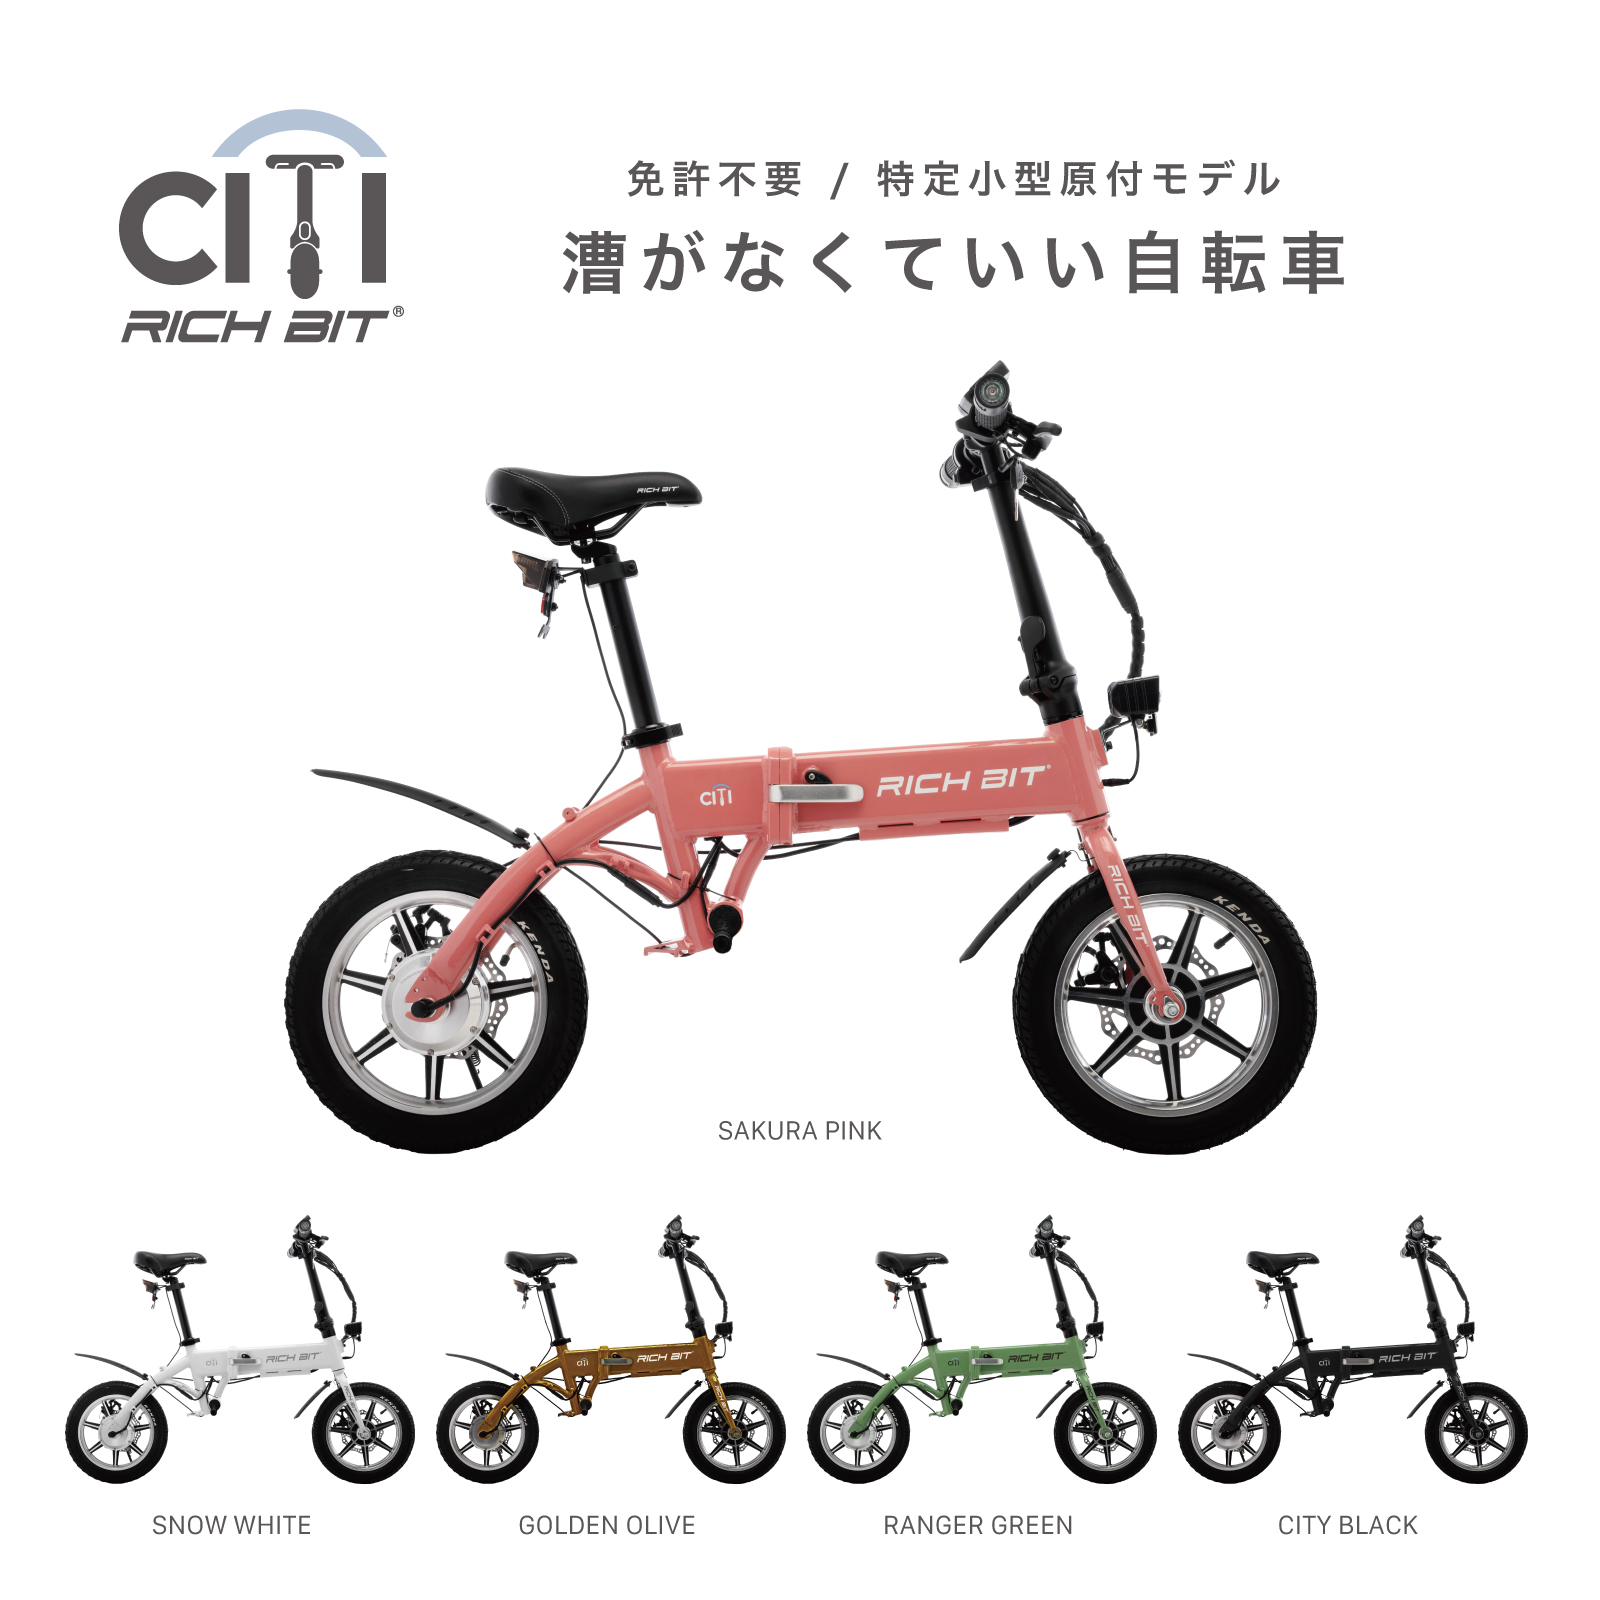 特定小型原付モデル&電動アシスト自転車モデル「RICHBIT CITY」5月15日 